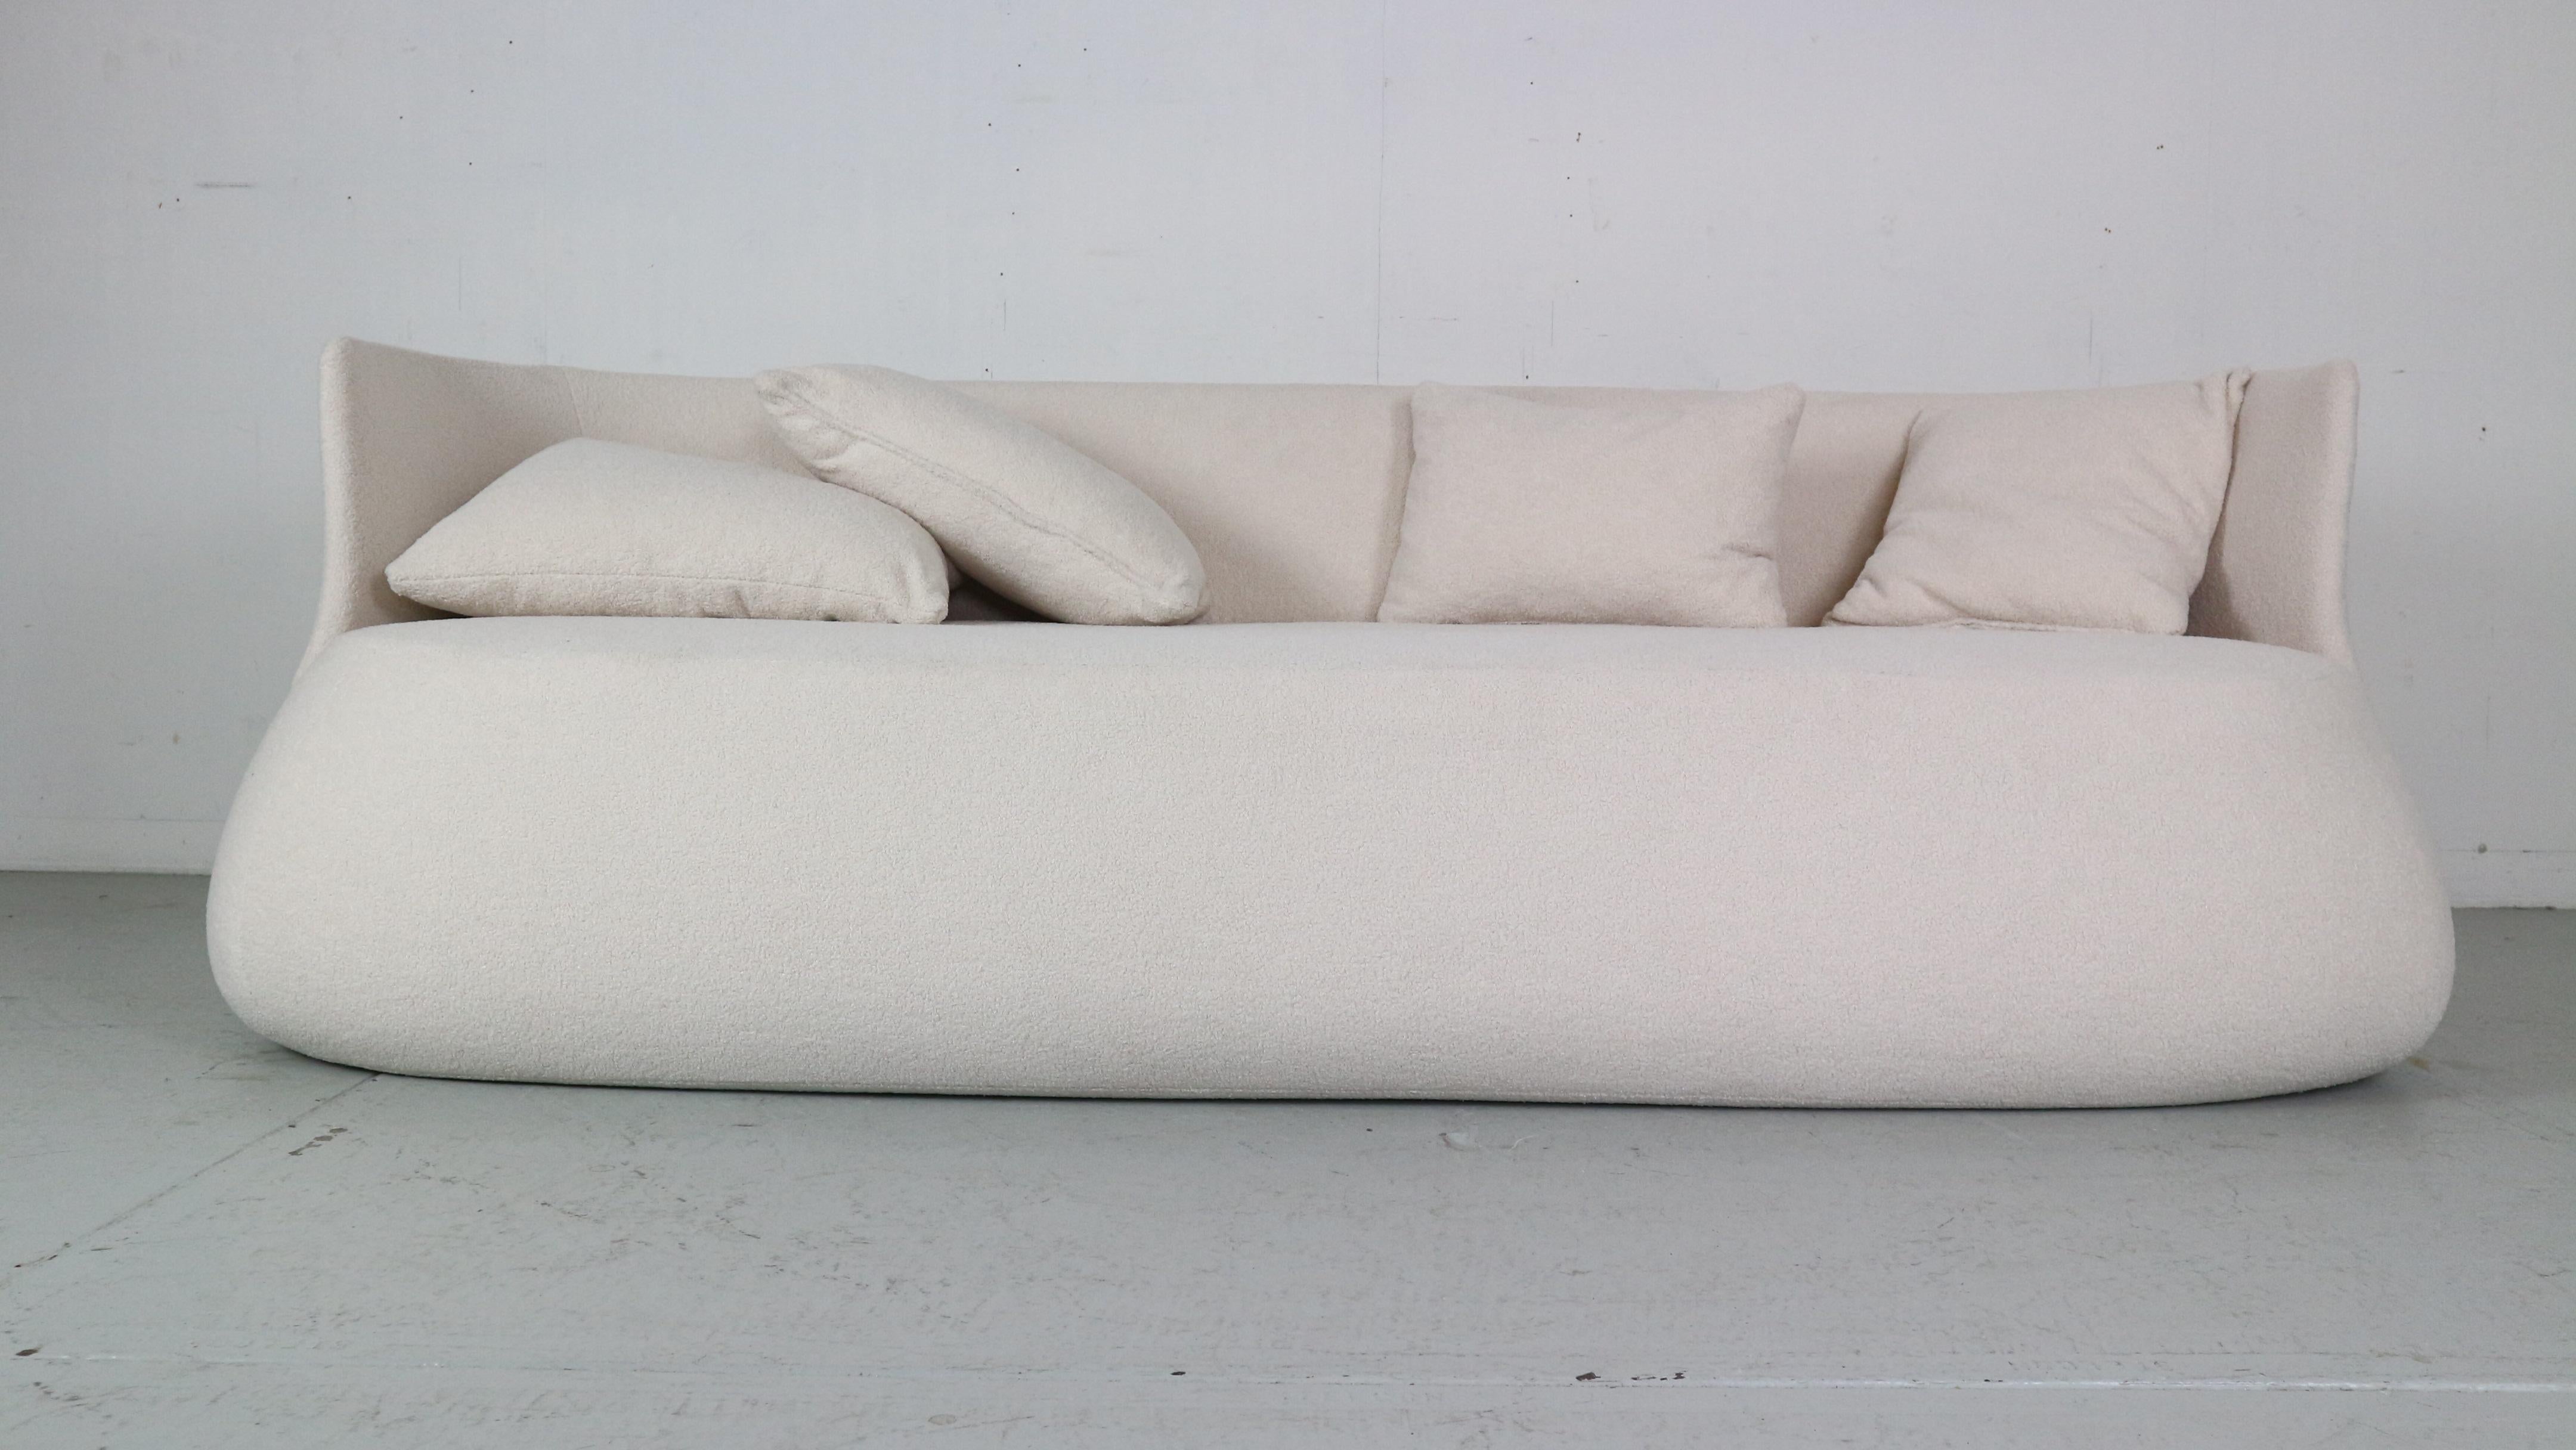 Canapé magnifiquement conçu et fabriqué par Patricia Urquiola et fabriqué pour B&B Italia.

Le canapé 